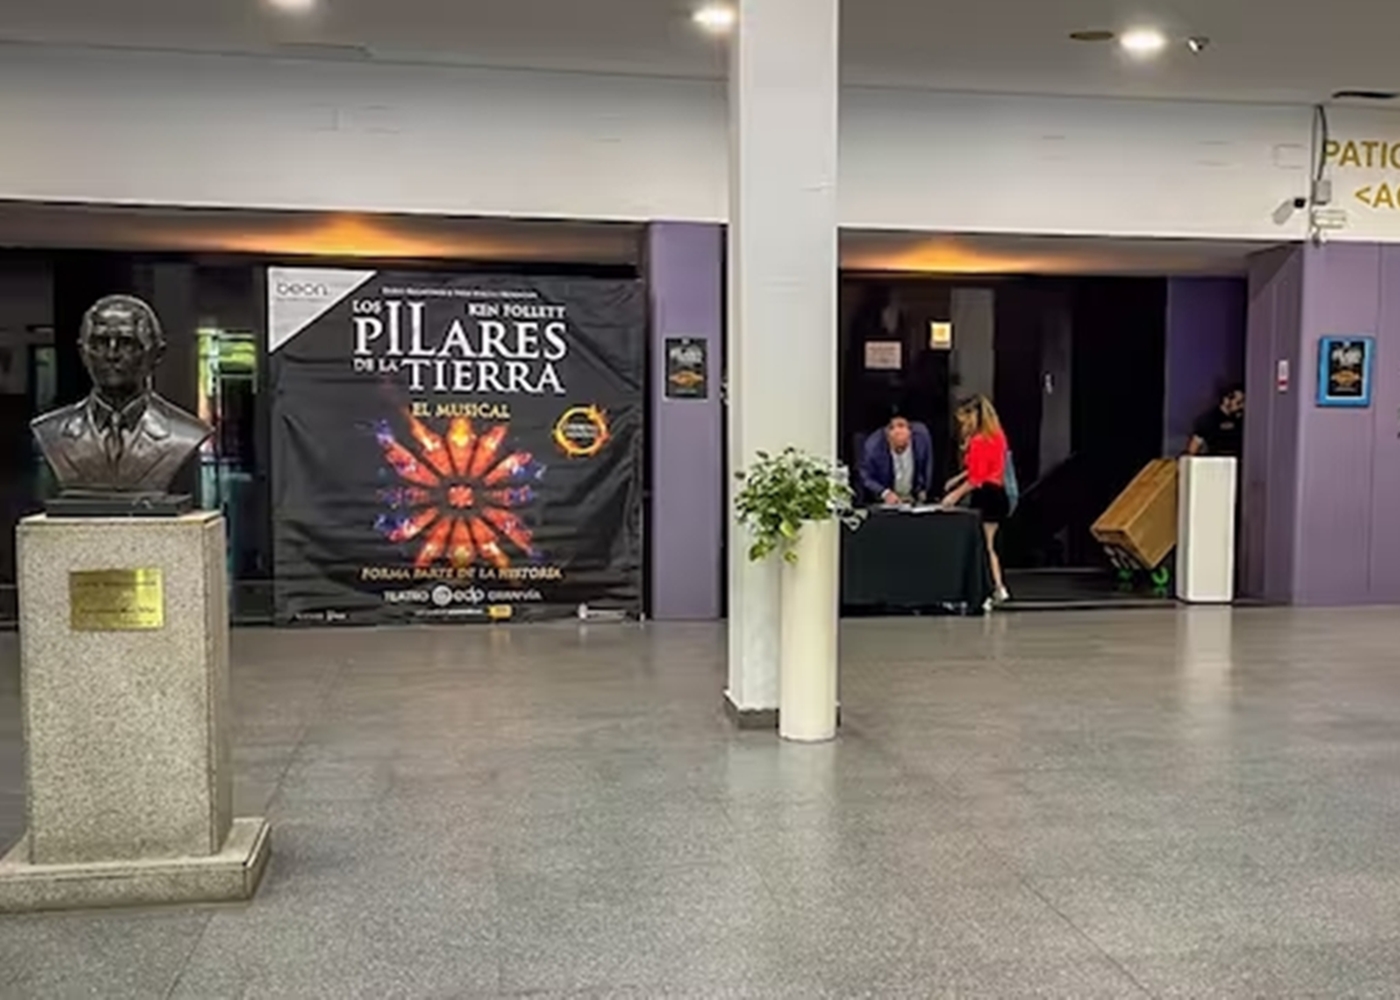 Alcorcón disfrutará de la superproducción 'Los Pilares de la tierra, el musical' antes de su estreno en Madrid